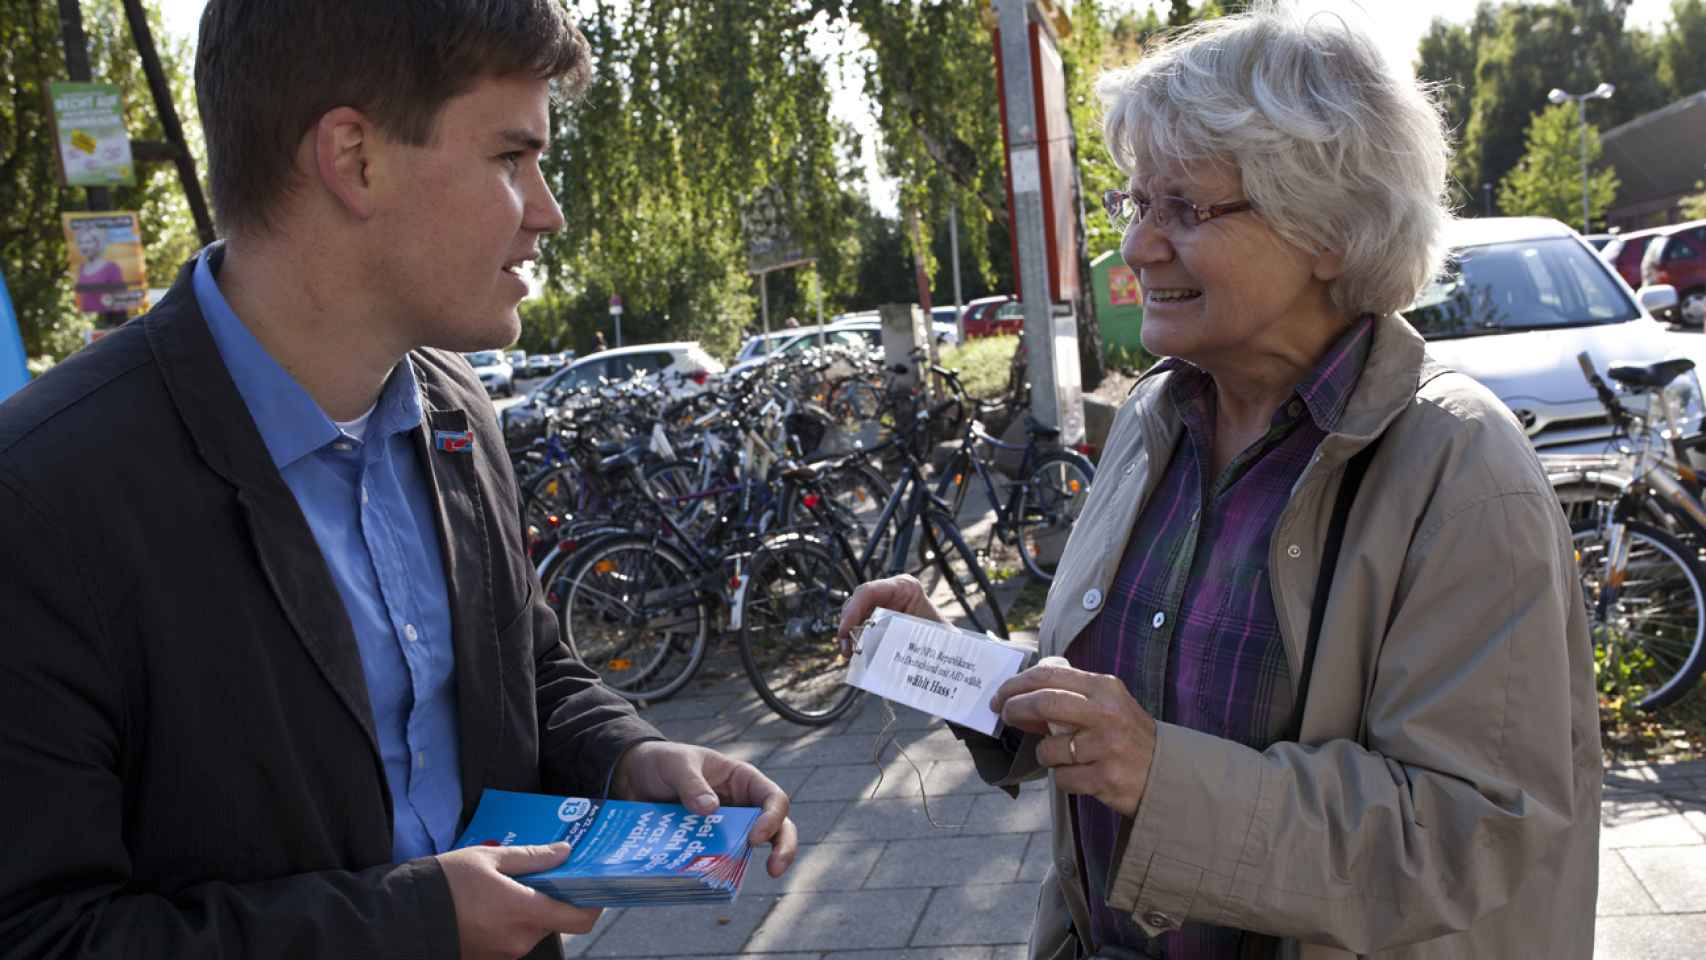 Mensah-Schramm habla con un político del partido de ultraderecha Alternativa para Alemania.